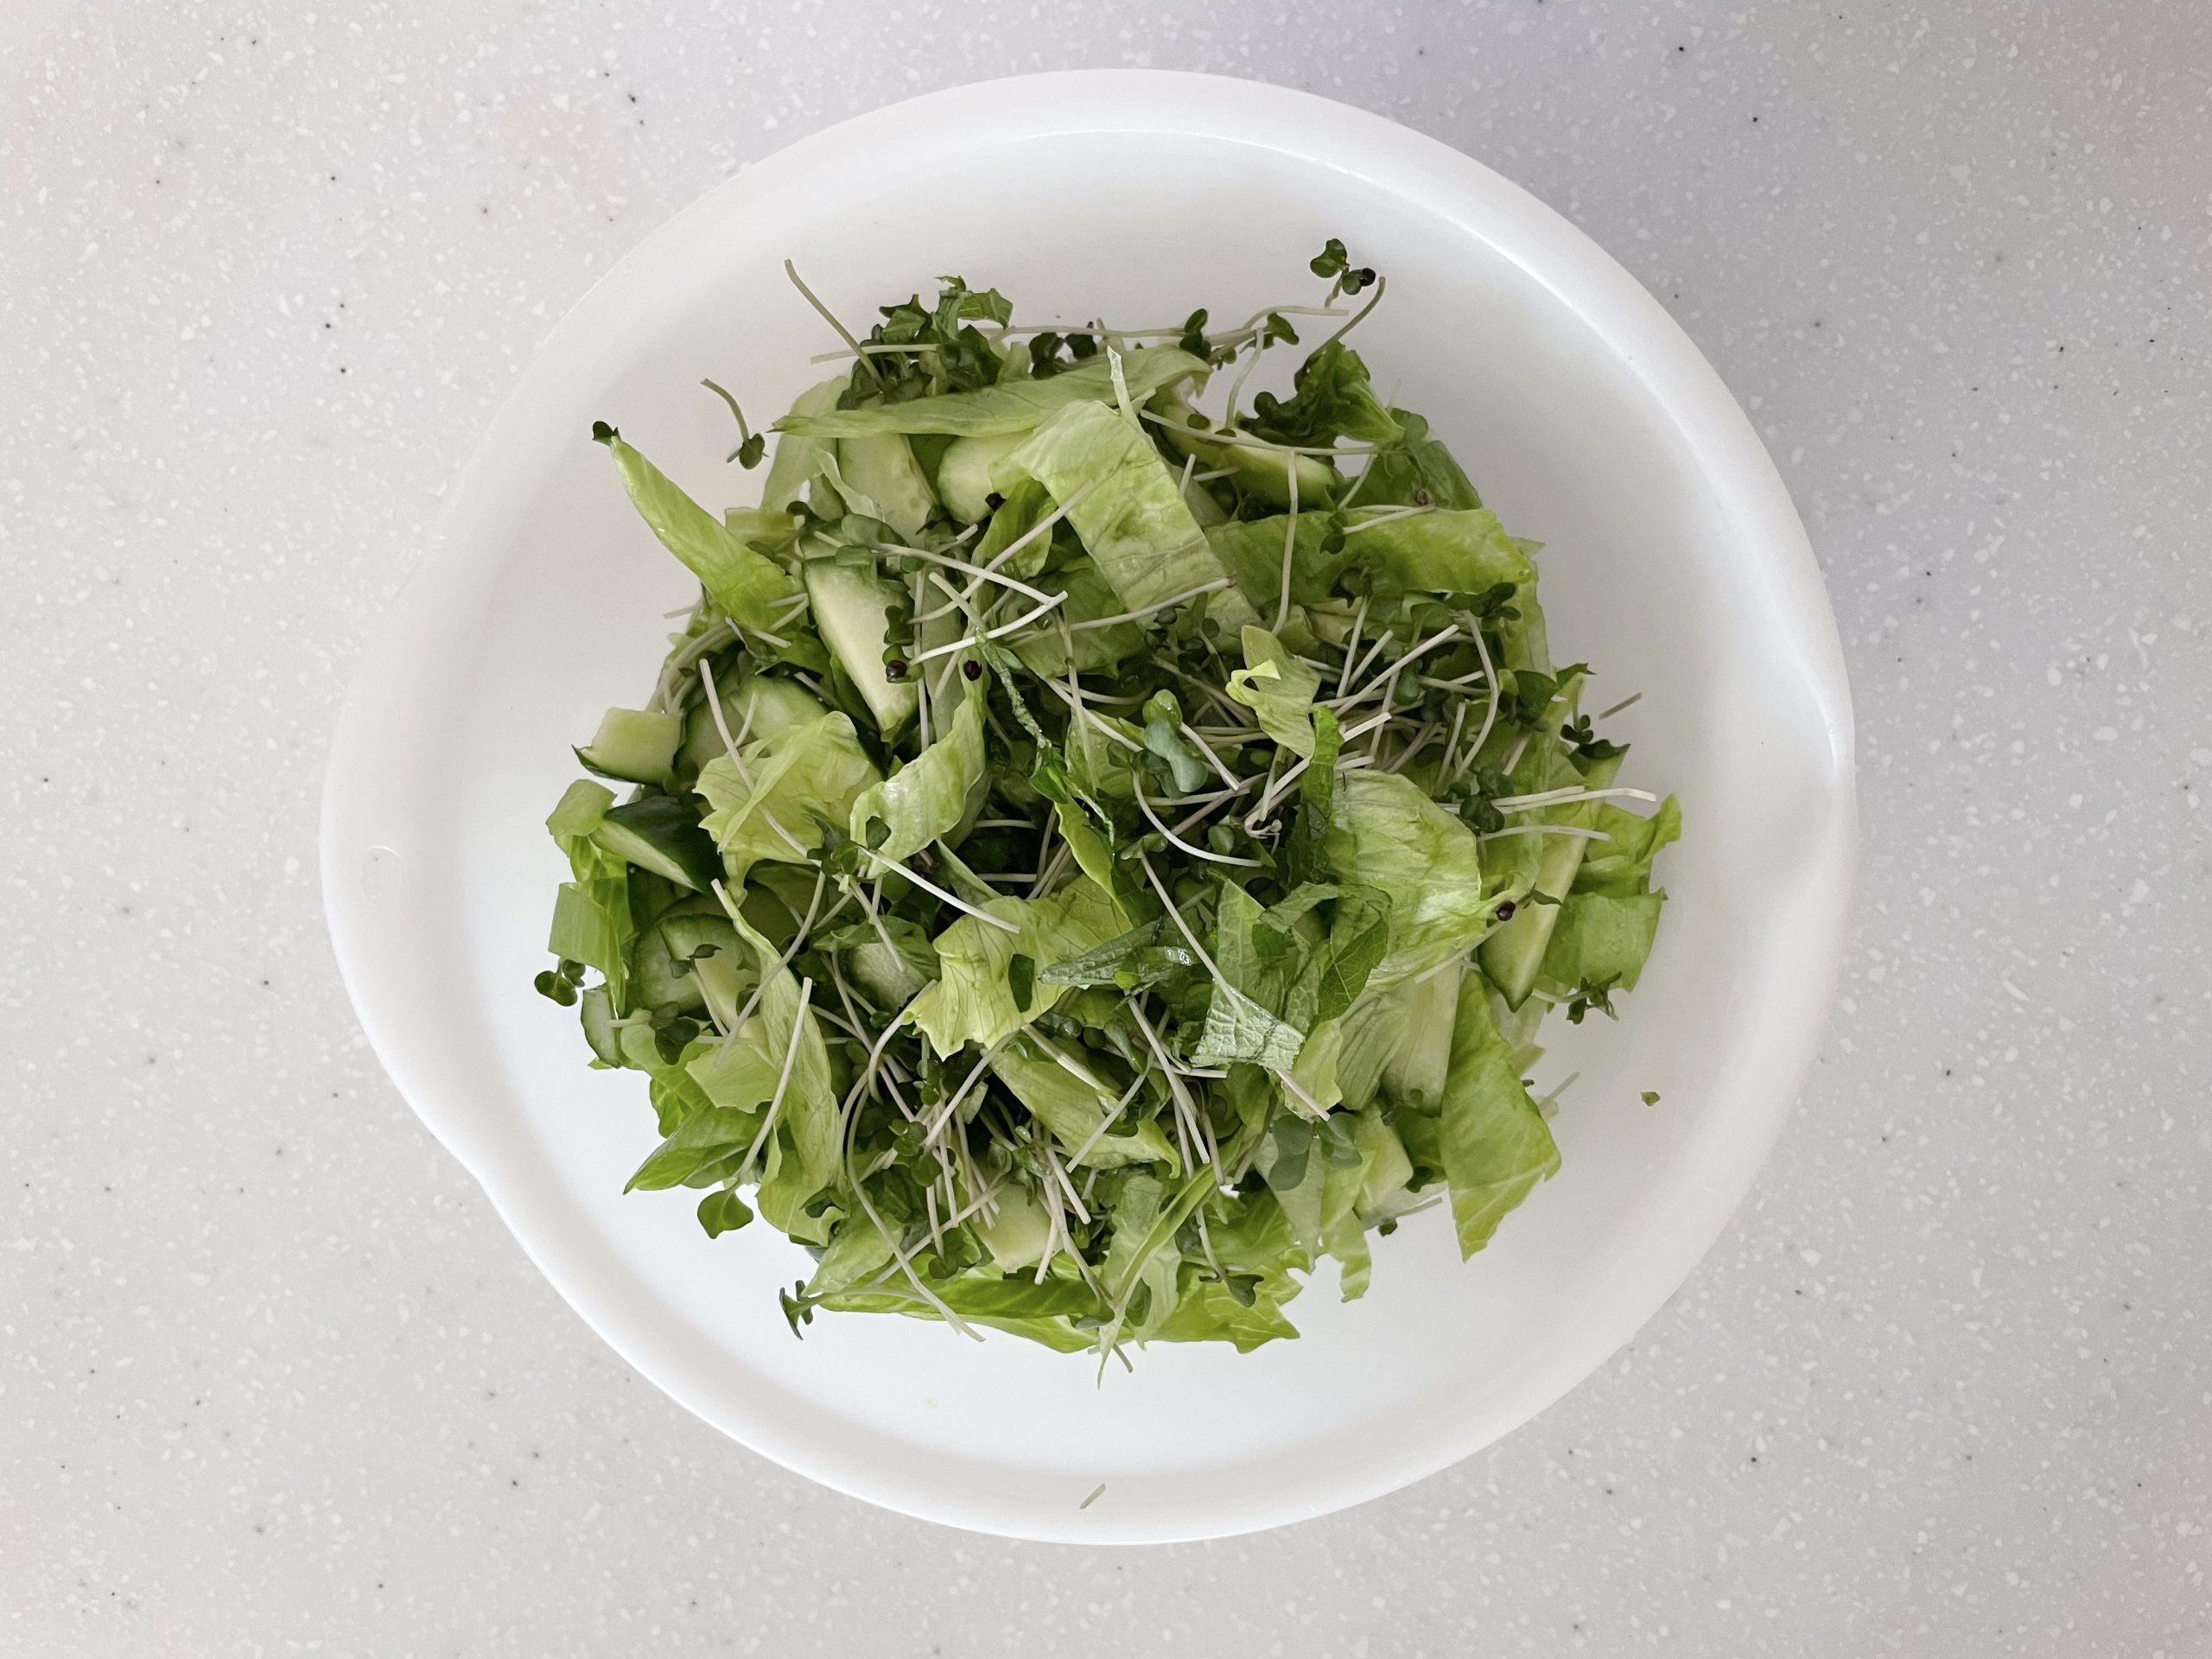 レタスは1.5cmほどの千切り、きゅうりは縦に1/2にし斜めスライス、しそは千切り、ブロッコリースプラウトはスポンジ部分を切り落とす。野菜はボウルに入れ混ぜ合わせておく。